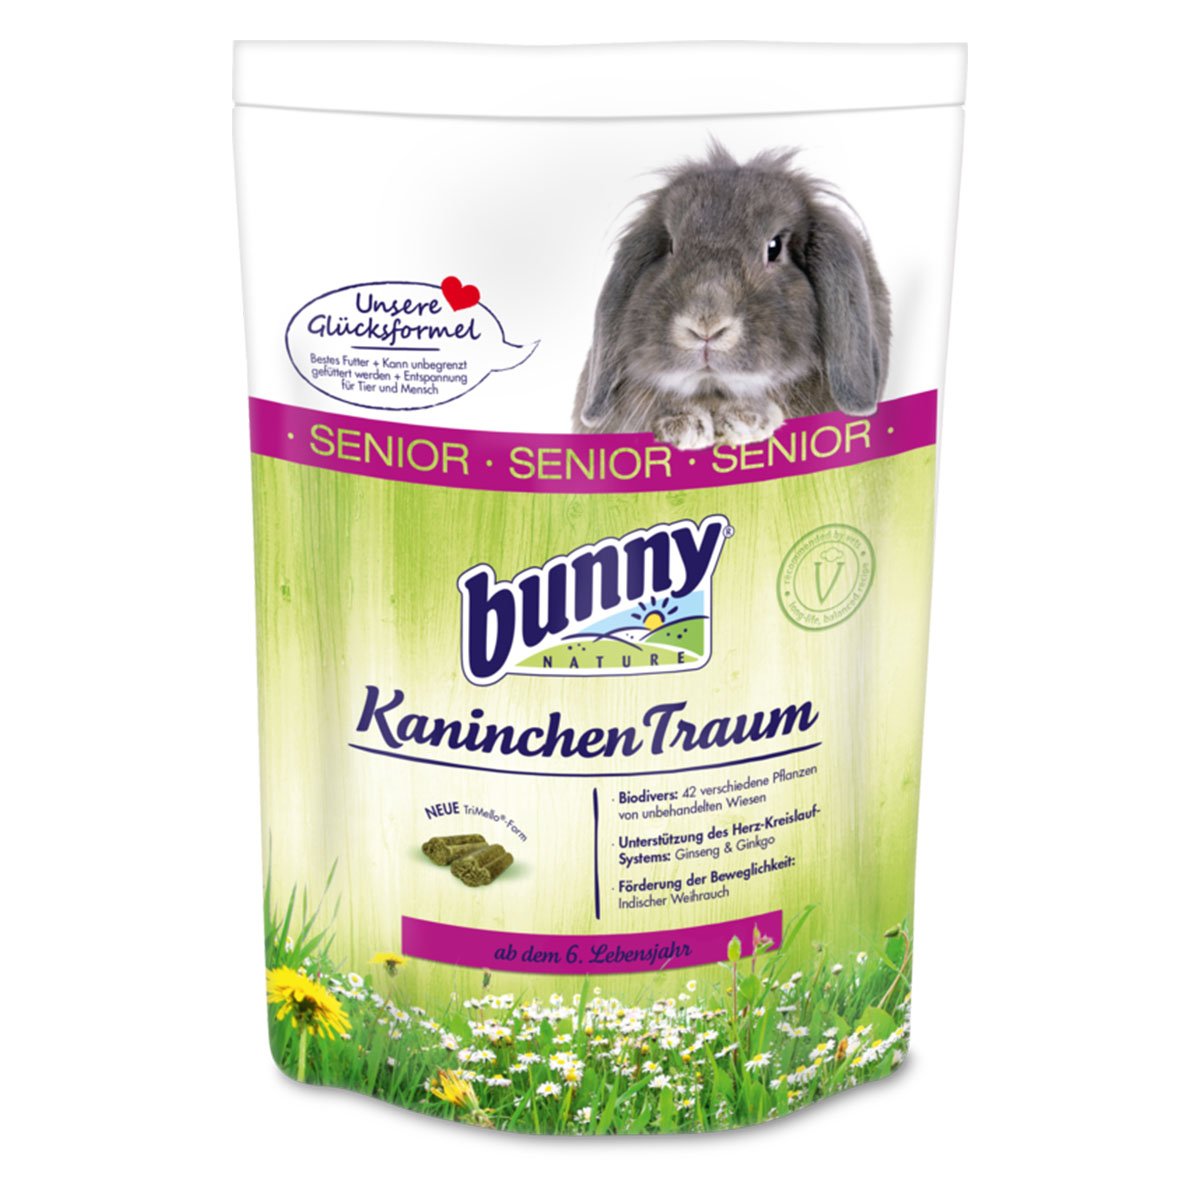 Bunny KaninchenTraum senior 1